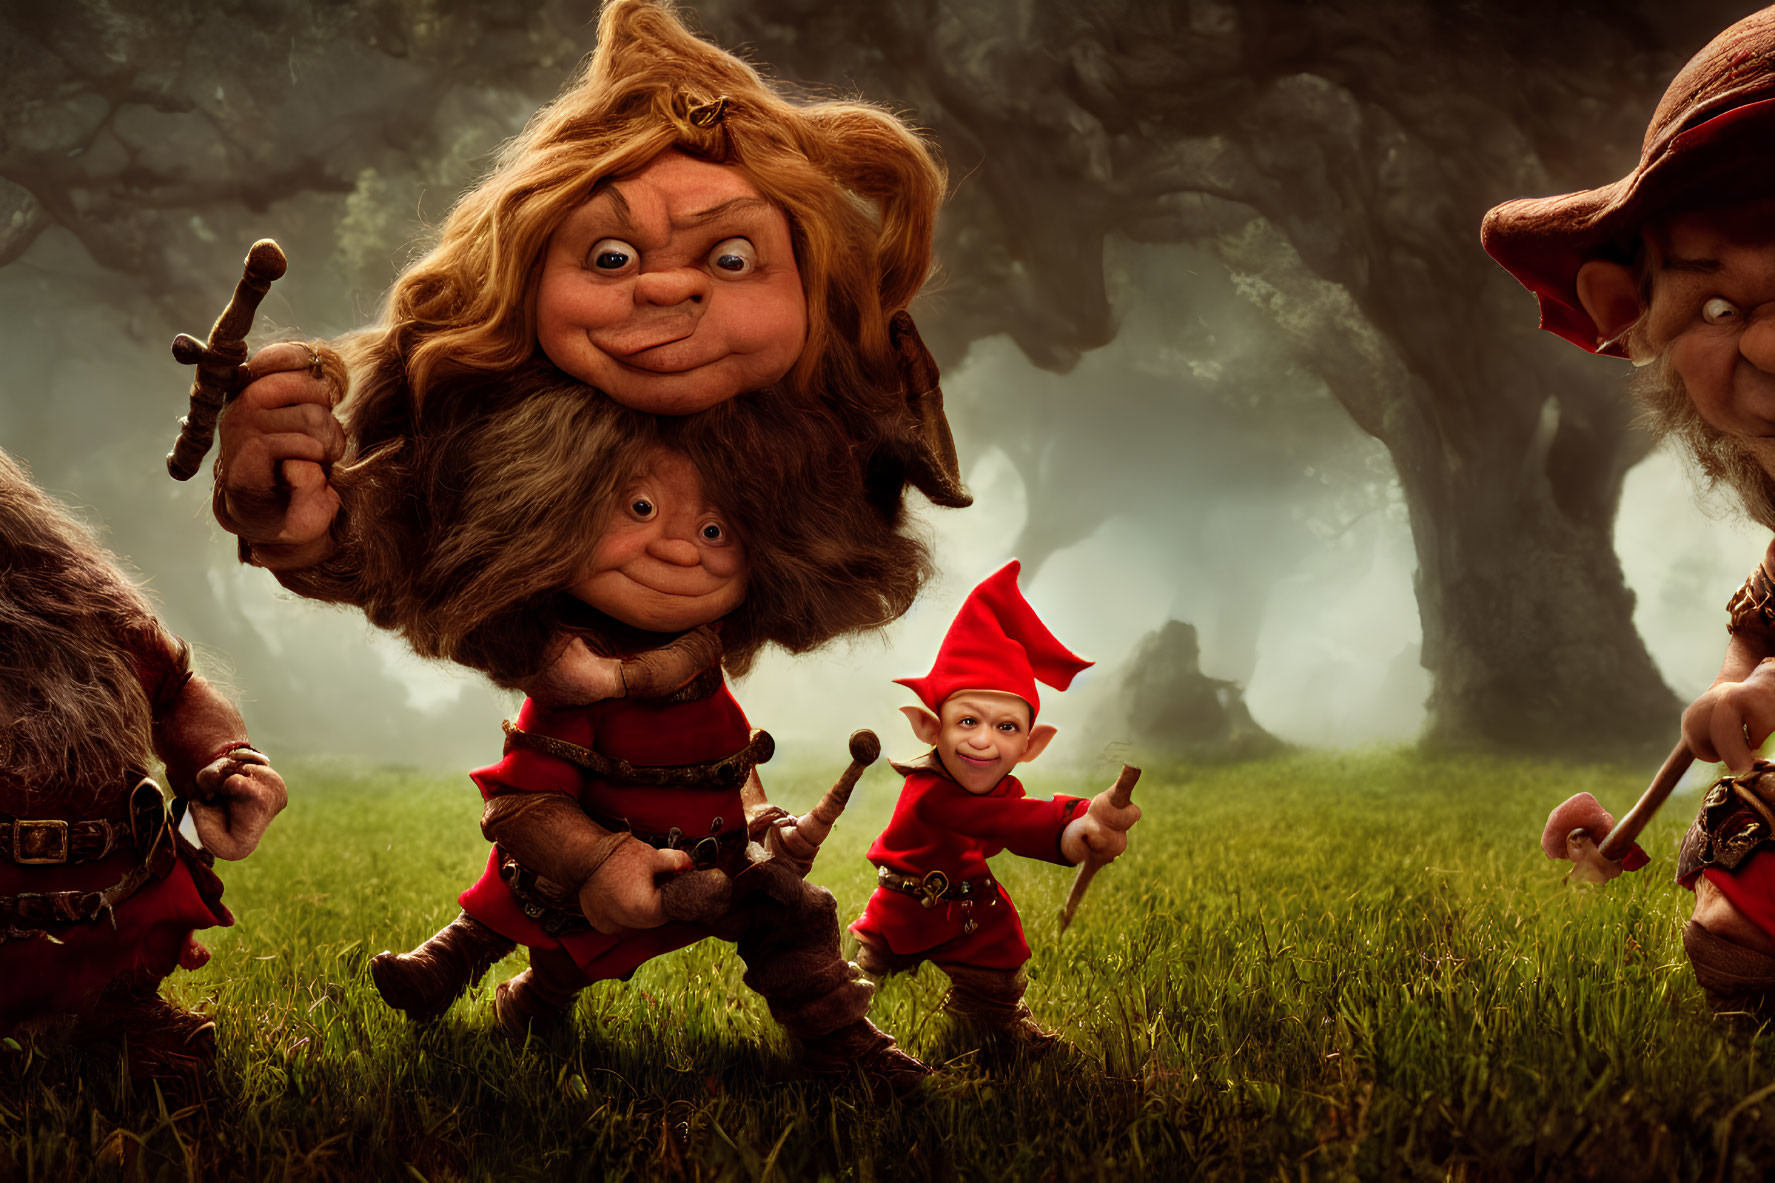 Fantasy Gnome-like Creatures in Vibrant Forest Scene